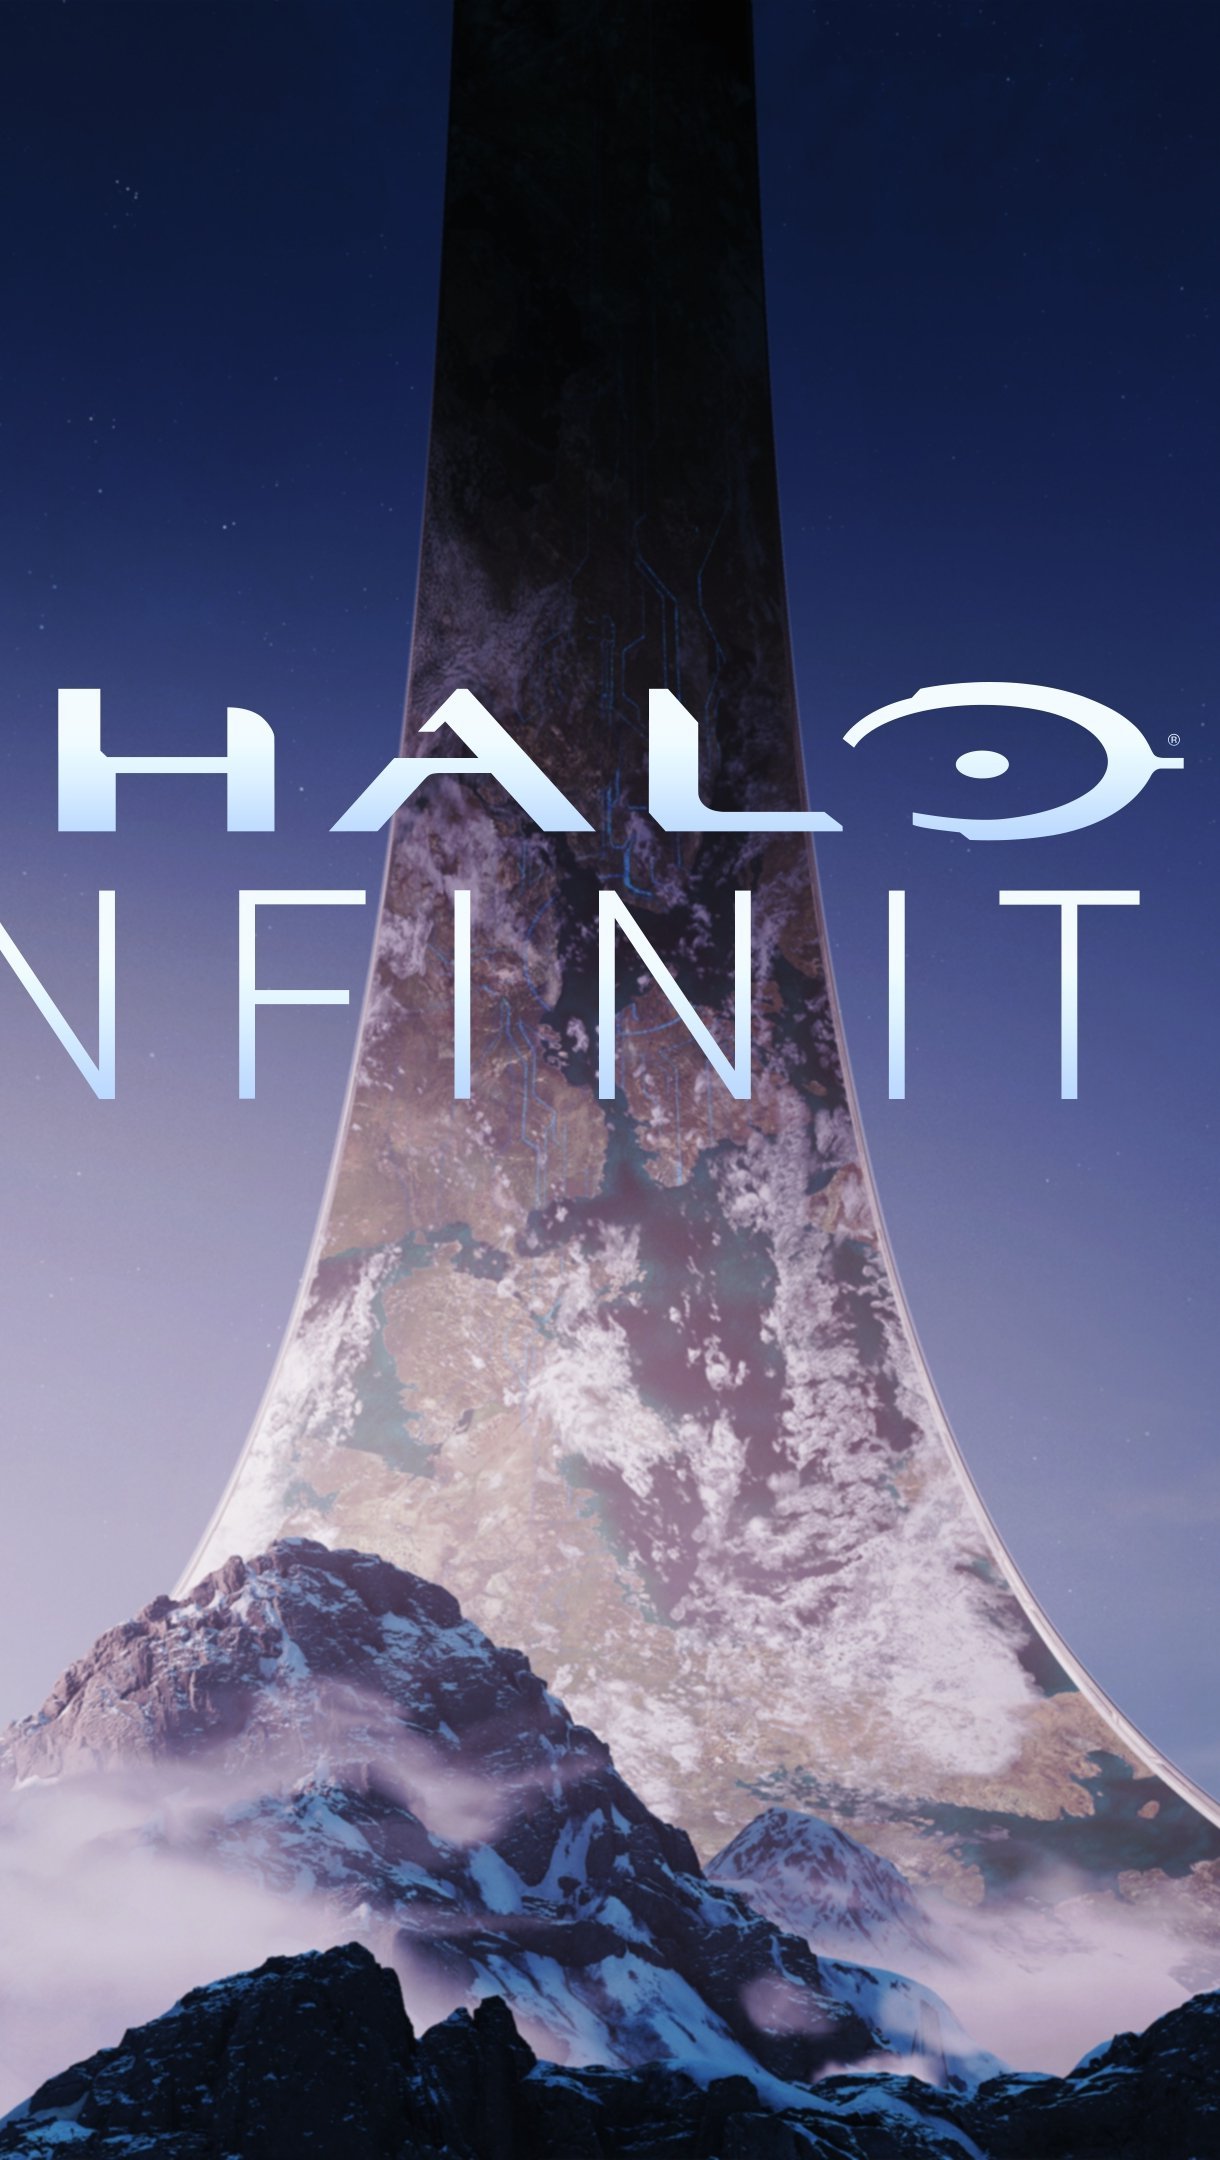 Fondos de pantalla Halo Infinite Vertical